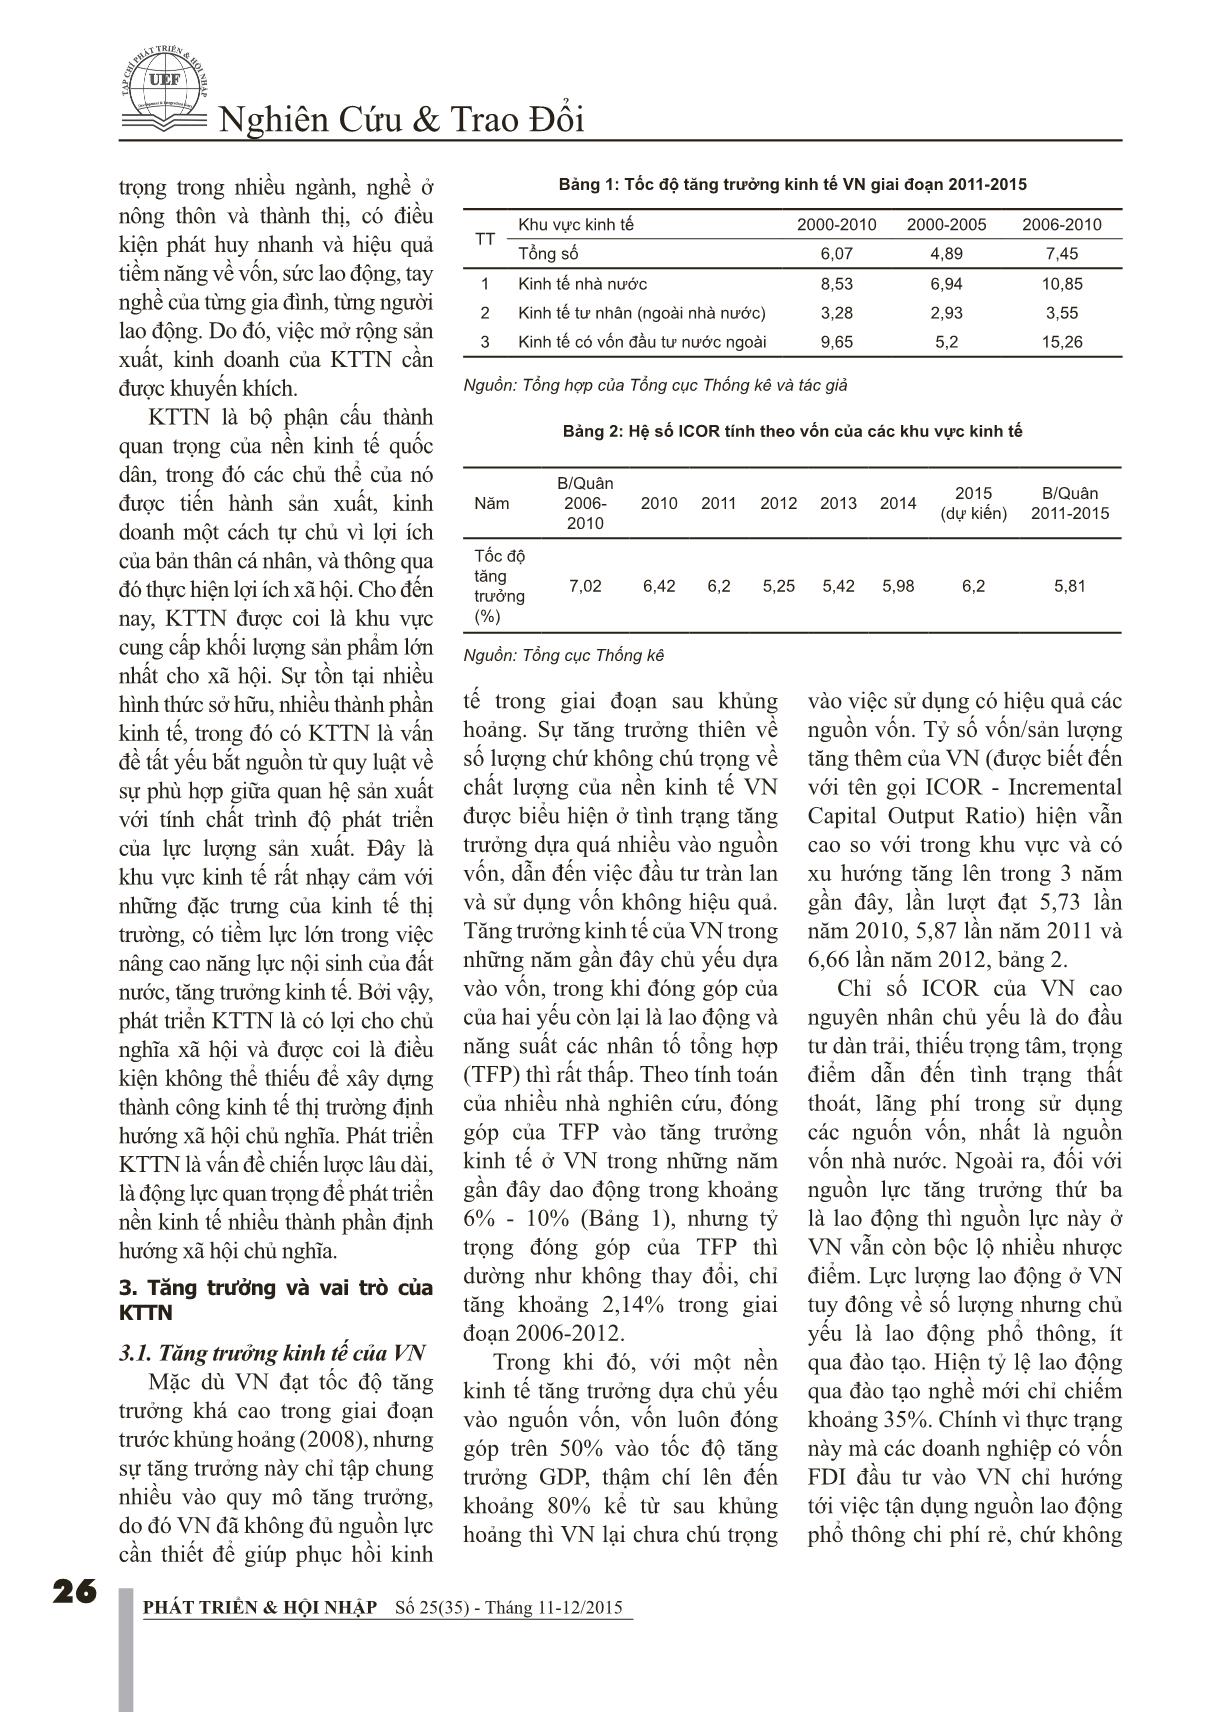 Vai trò của kinh tế tư nhân với tăng trưởng kinh tế của Việt Nam trang 3